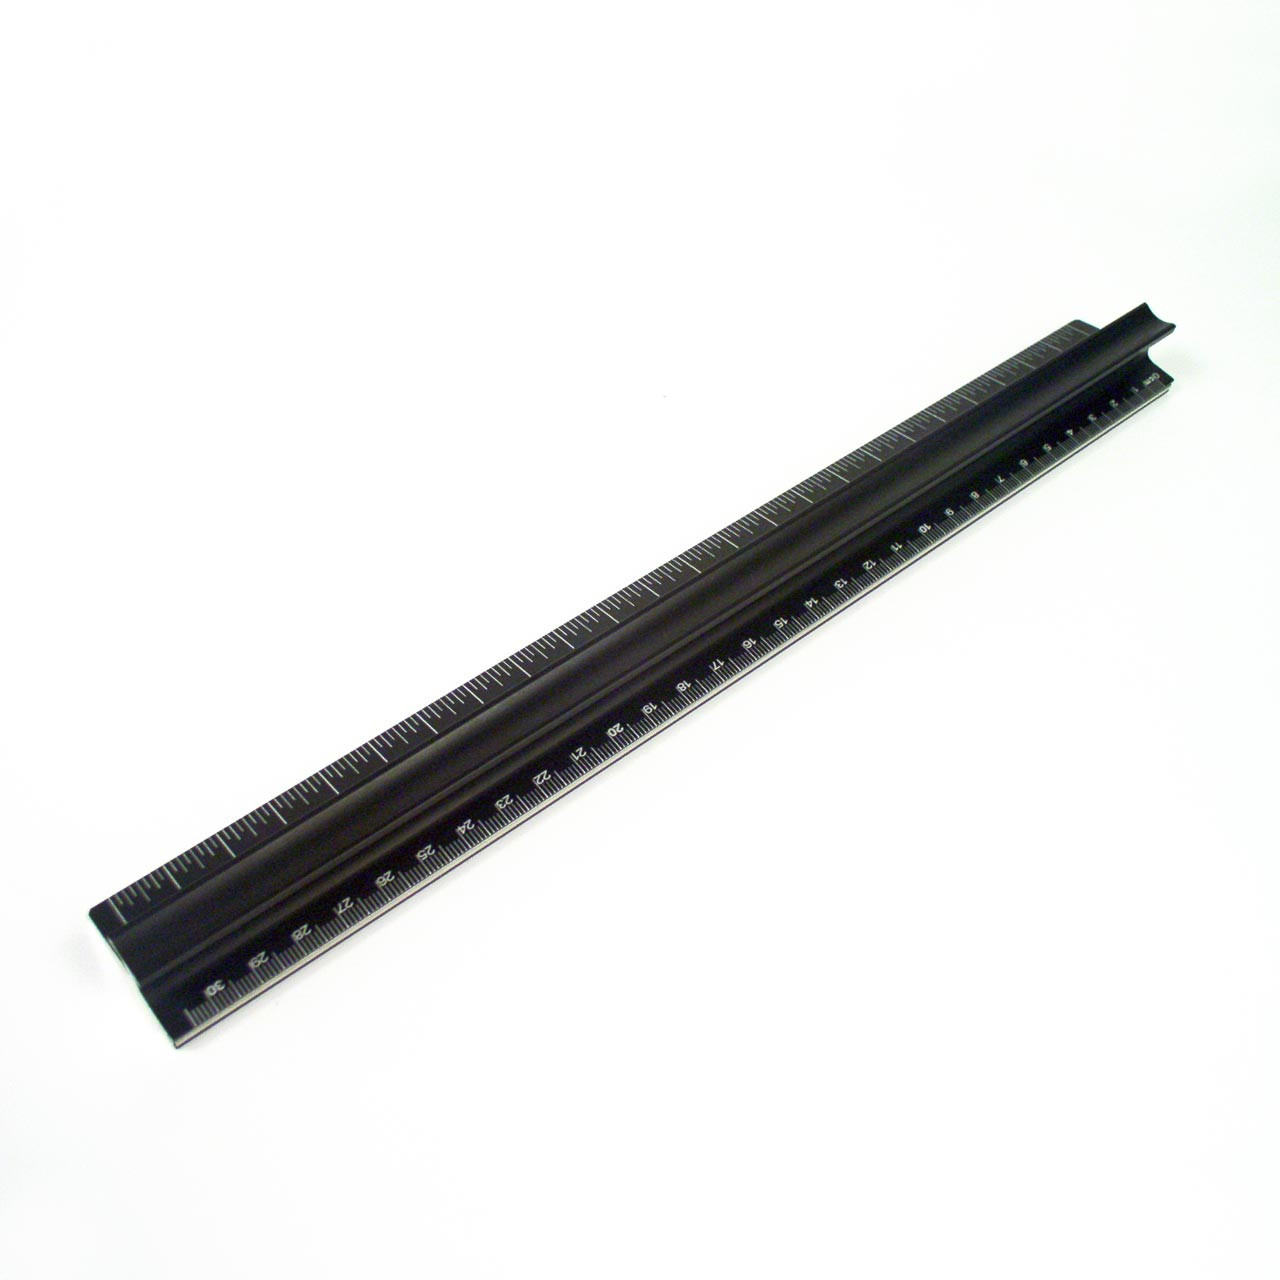 12 inch (30 cm) Stainless Steel Ruler - No Slip Cork Backing for Straight  Edge Scoring 